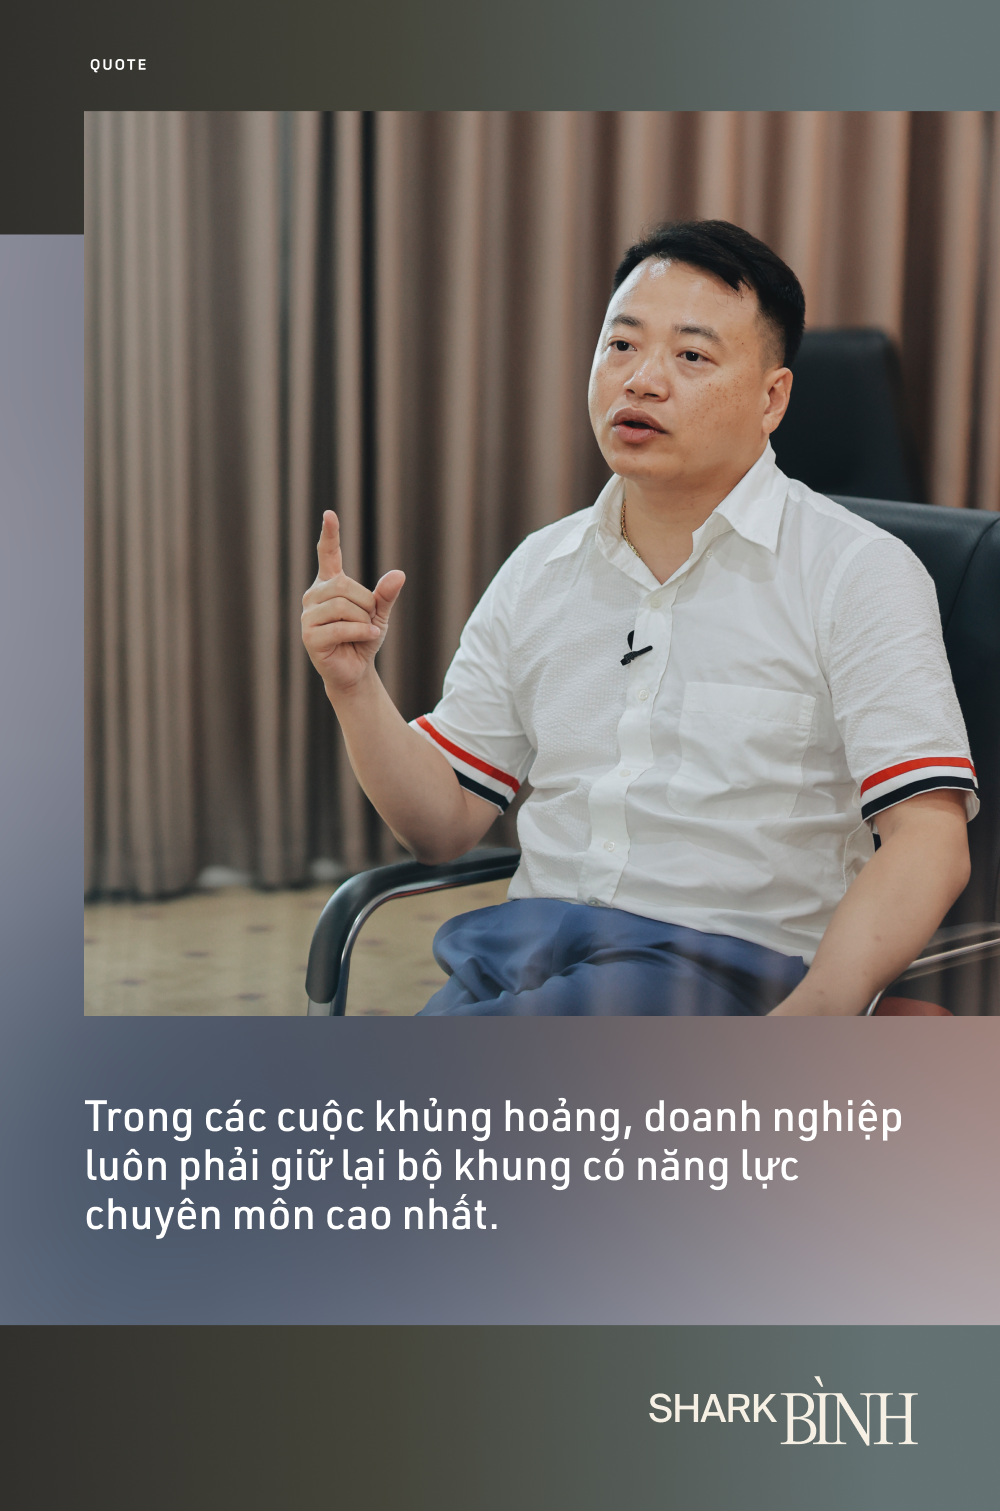 Shark Bình: Bây giờ không thể giám sát nhân sự như quản đốc với công nhân, cái tài ở chỗ trả lương xứng đáng và được việc cho mình! - Ảnh 3.